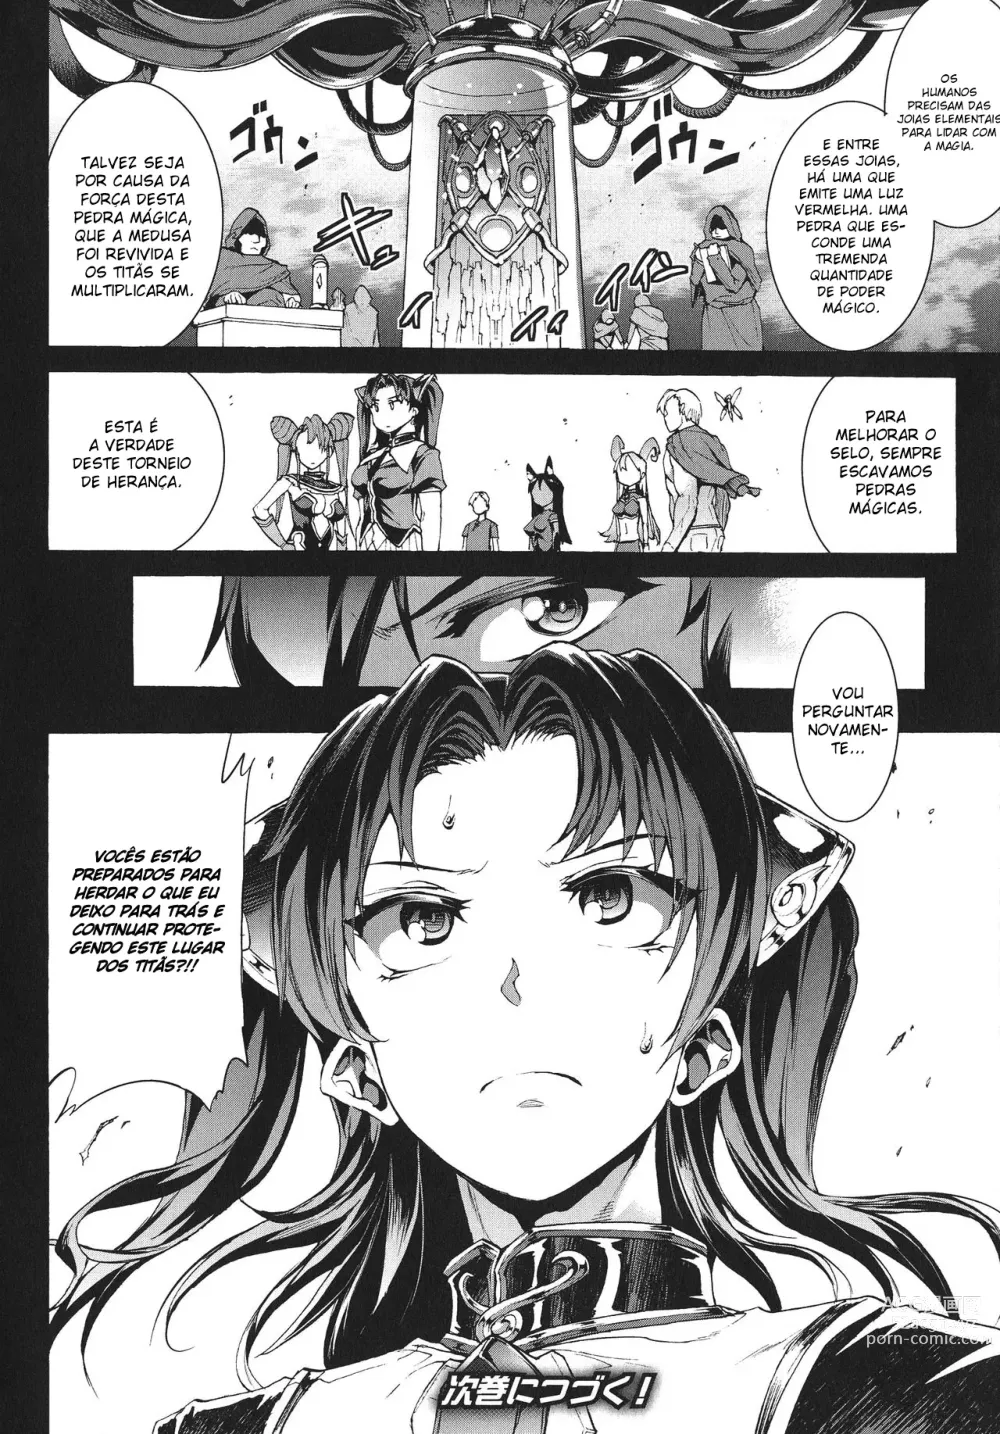 Page 180 of doujinshi Raikou Shinki Igis Magia -PANDRA saga 3rd ignition- Ch. 1-8